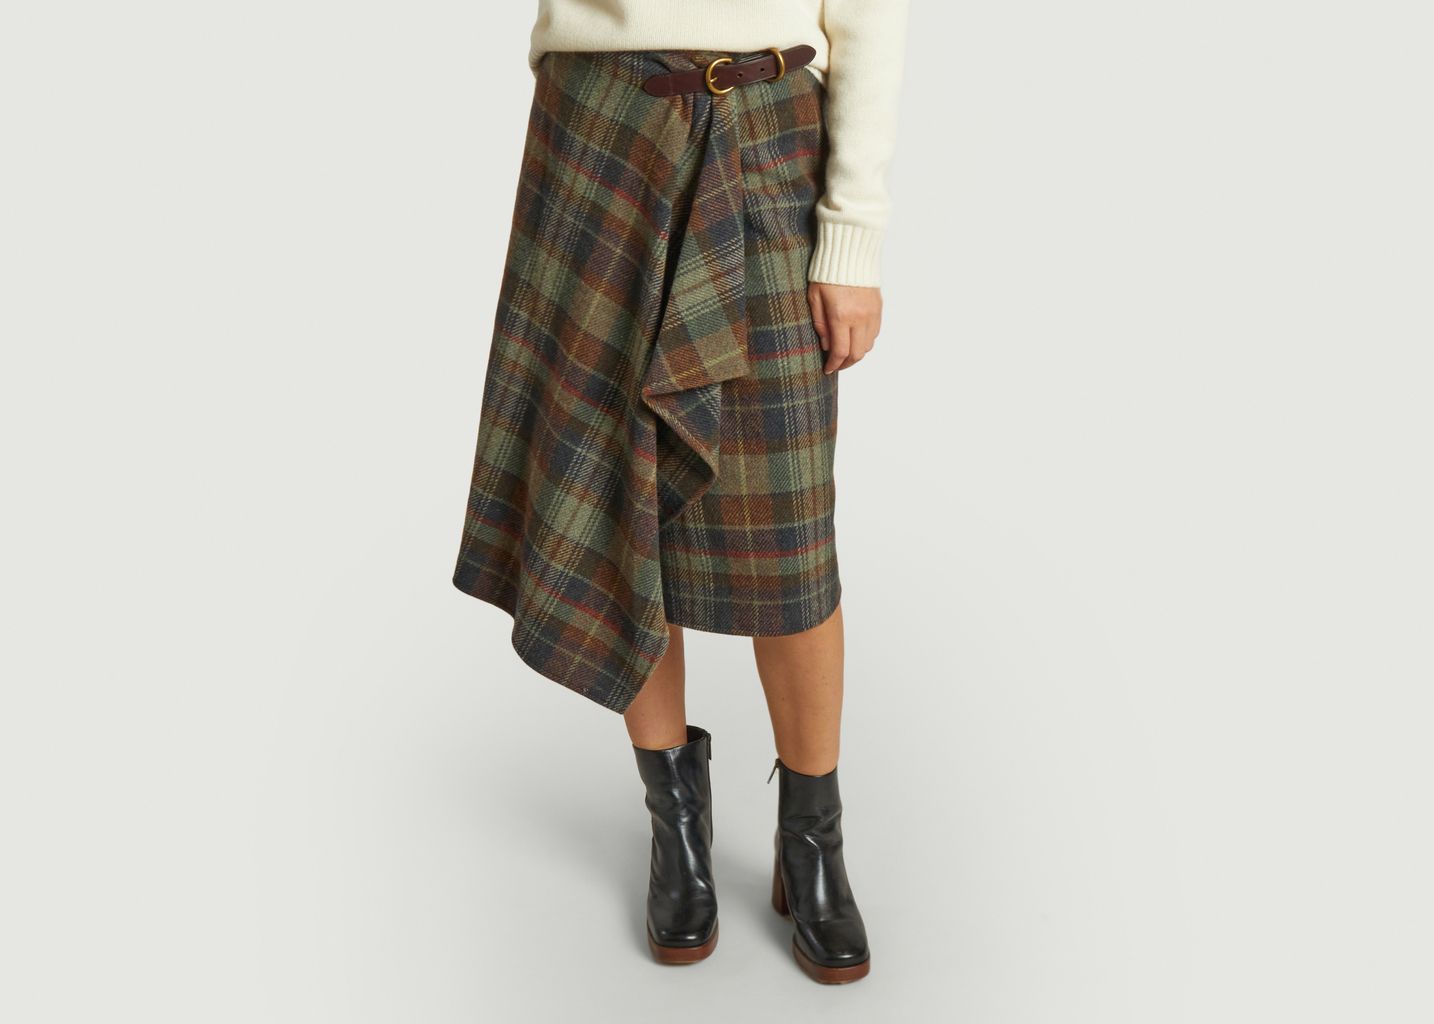 Jupe écossaise à boucle et chevrons - Polo Ralph Lauren